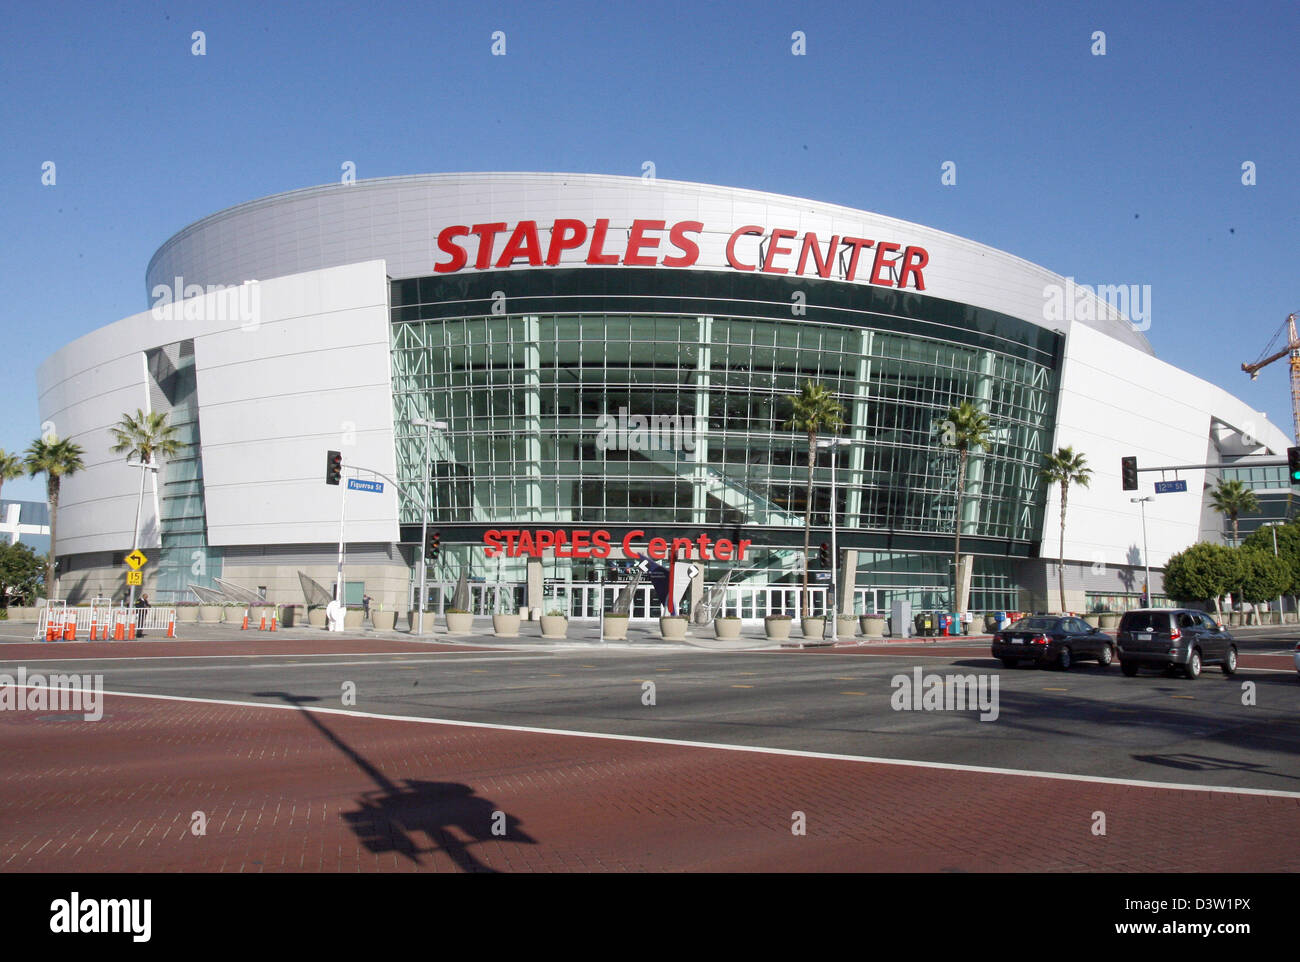 La photo montre le Staples Center qui abrite entre autres des manifestations sportives, à Los Angeles, Californie, USA, le 28 novembre 2006. Photo : Uli Deck Banque D'Images